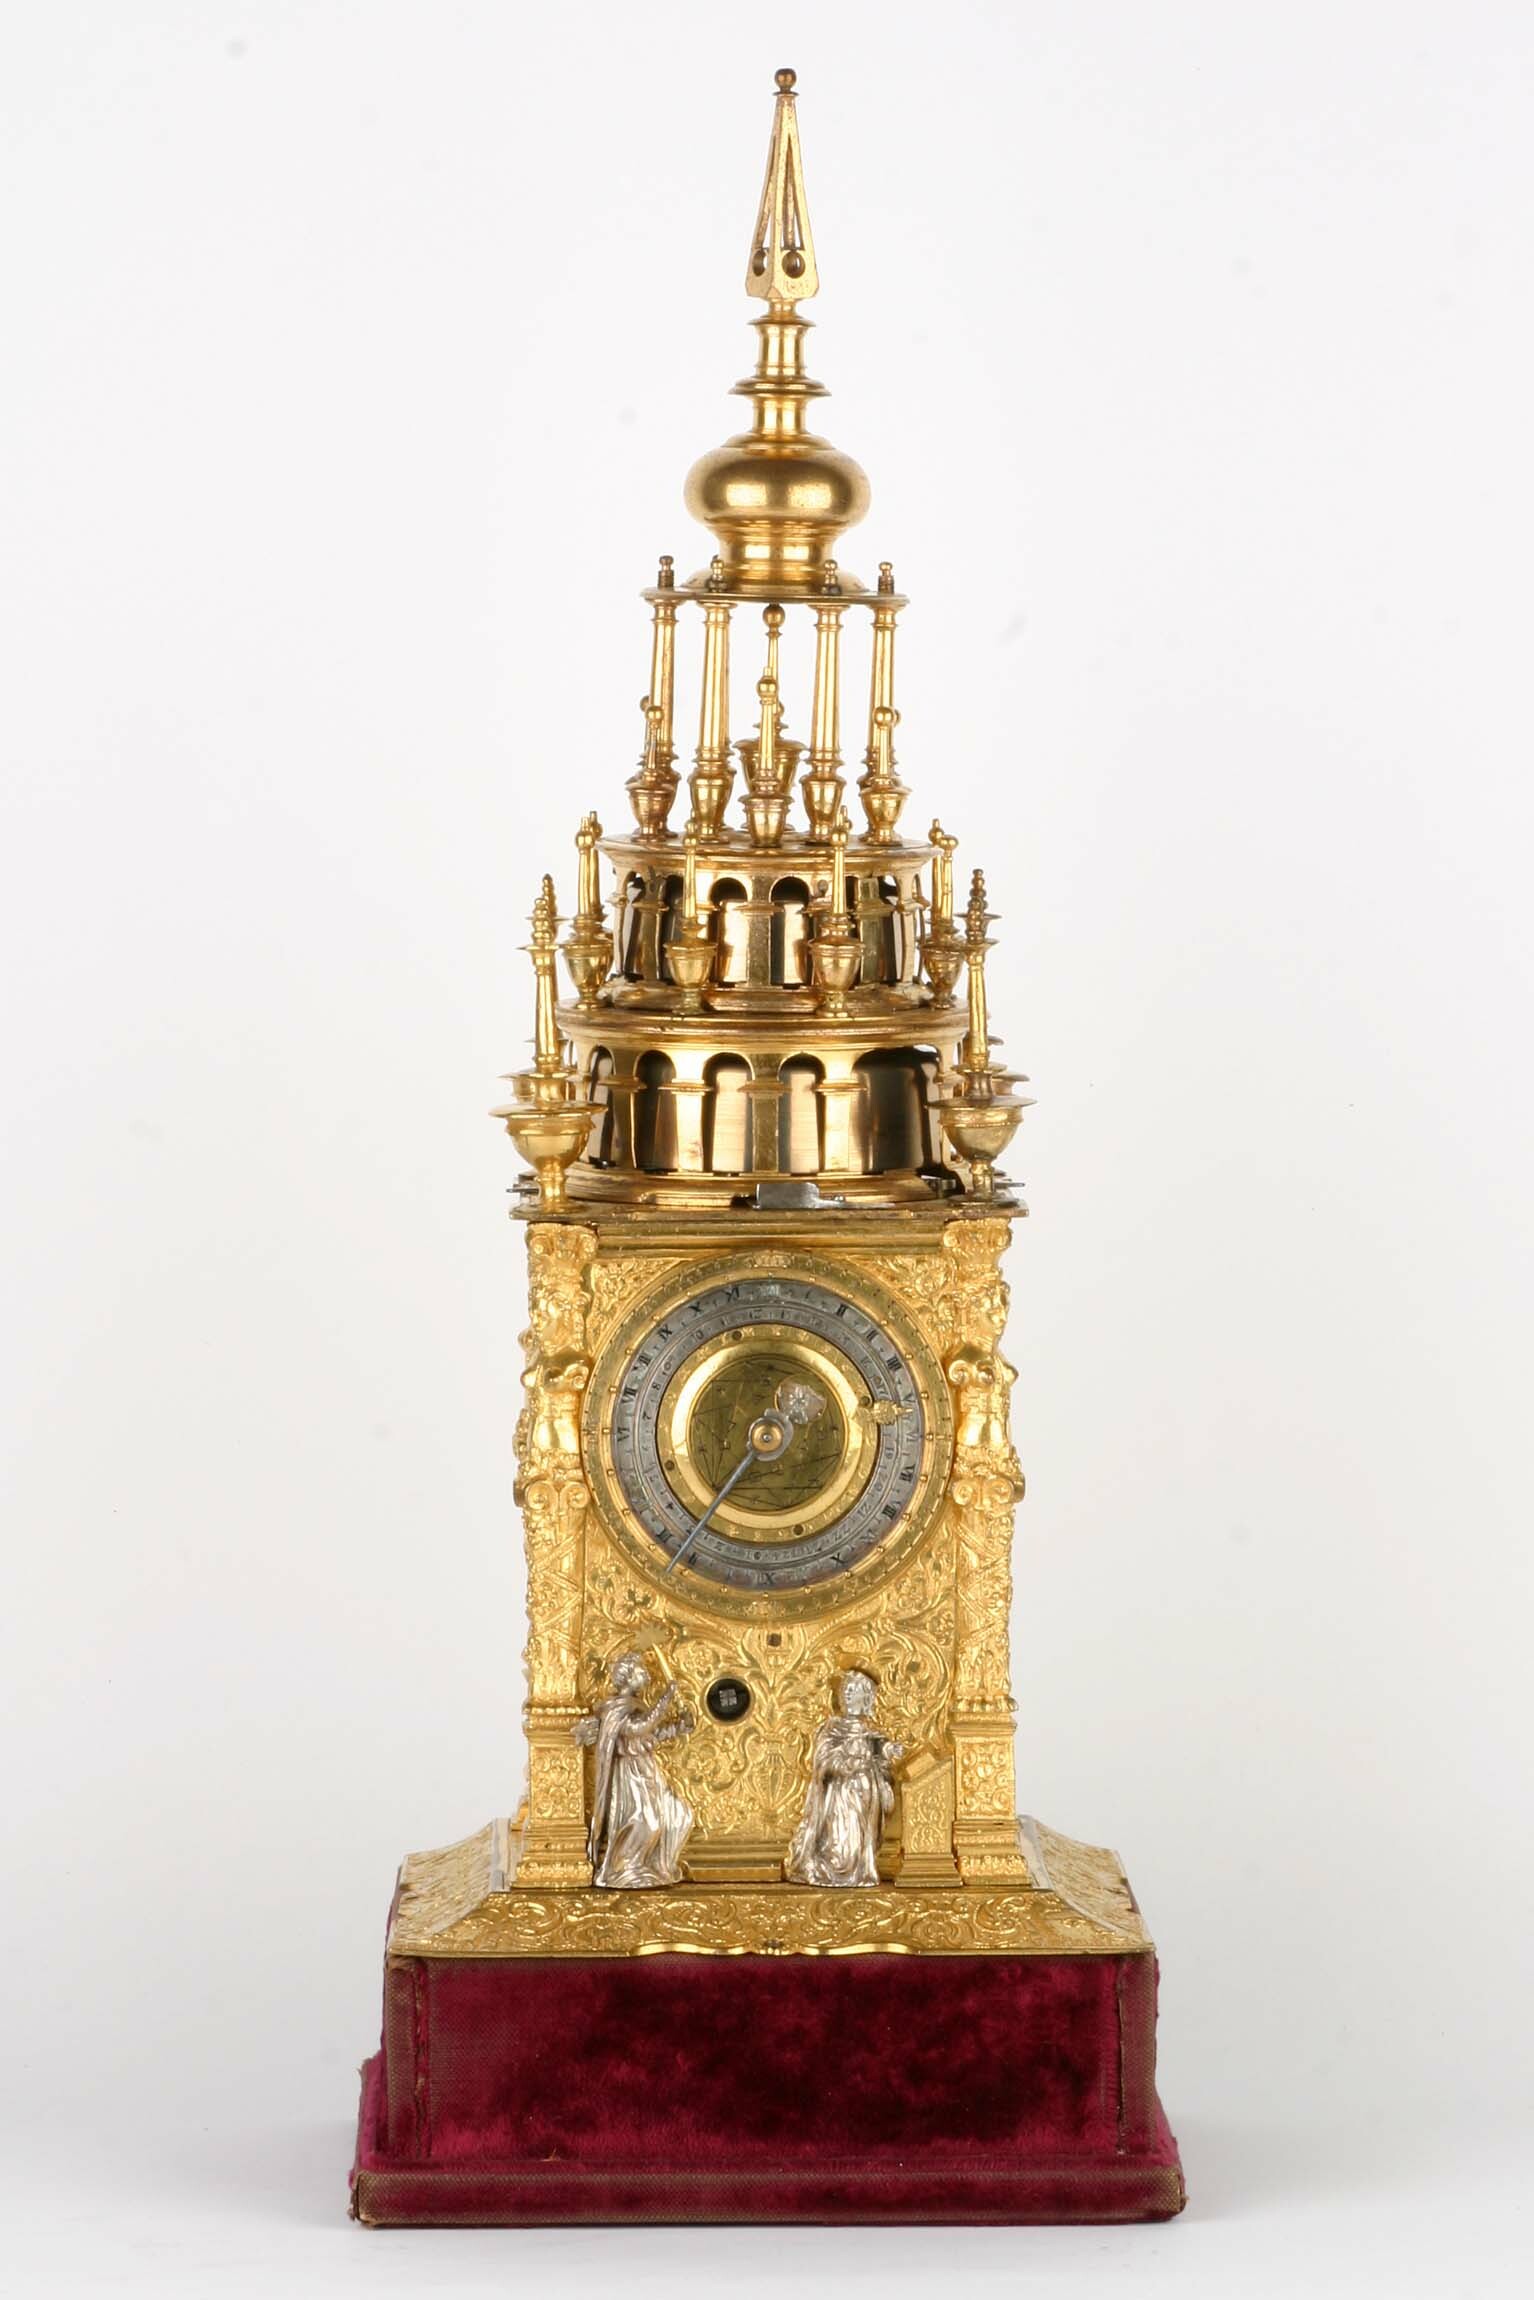 Türmchenuhr mit Automat, Hans Koch, München, um 1580 (Deutsches Uhrenmuseum CC BY-SA)